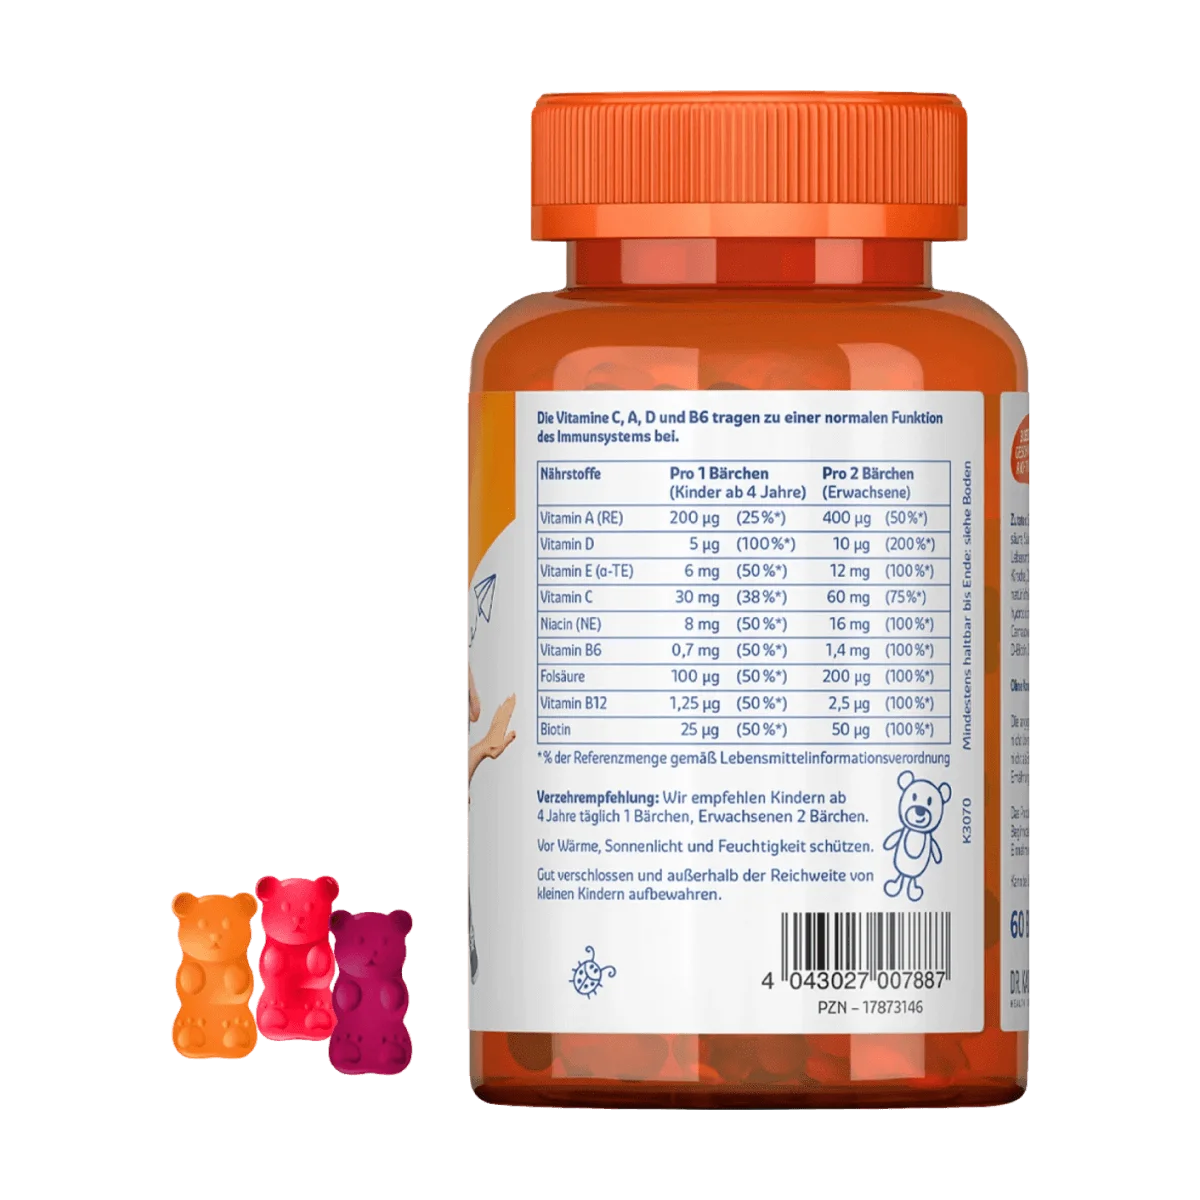 Sanostol Multi-Vitamin Bärchen 60 Stk, 120 g